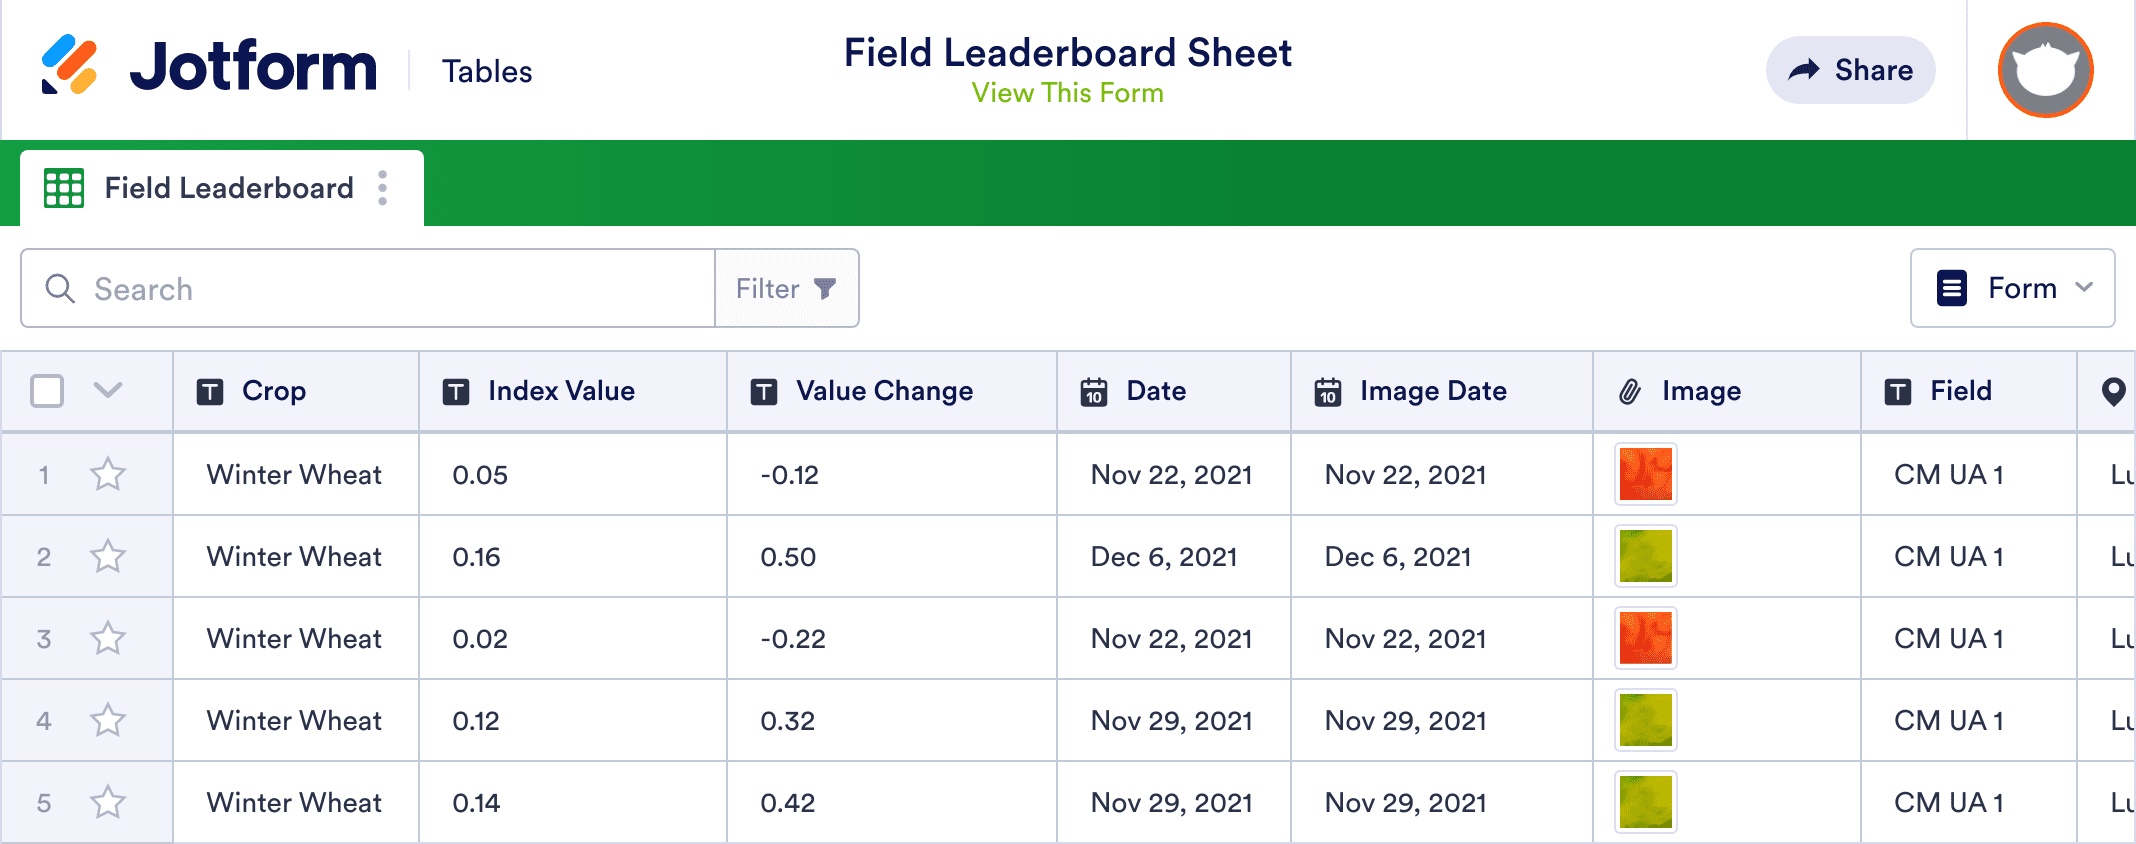 Field Leaderboard Sheet